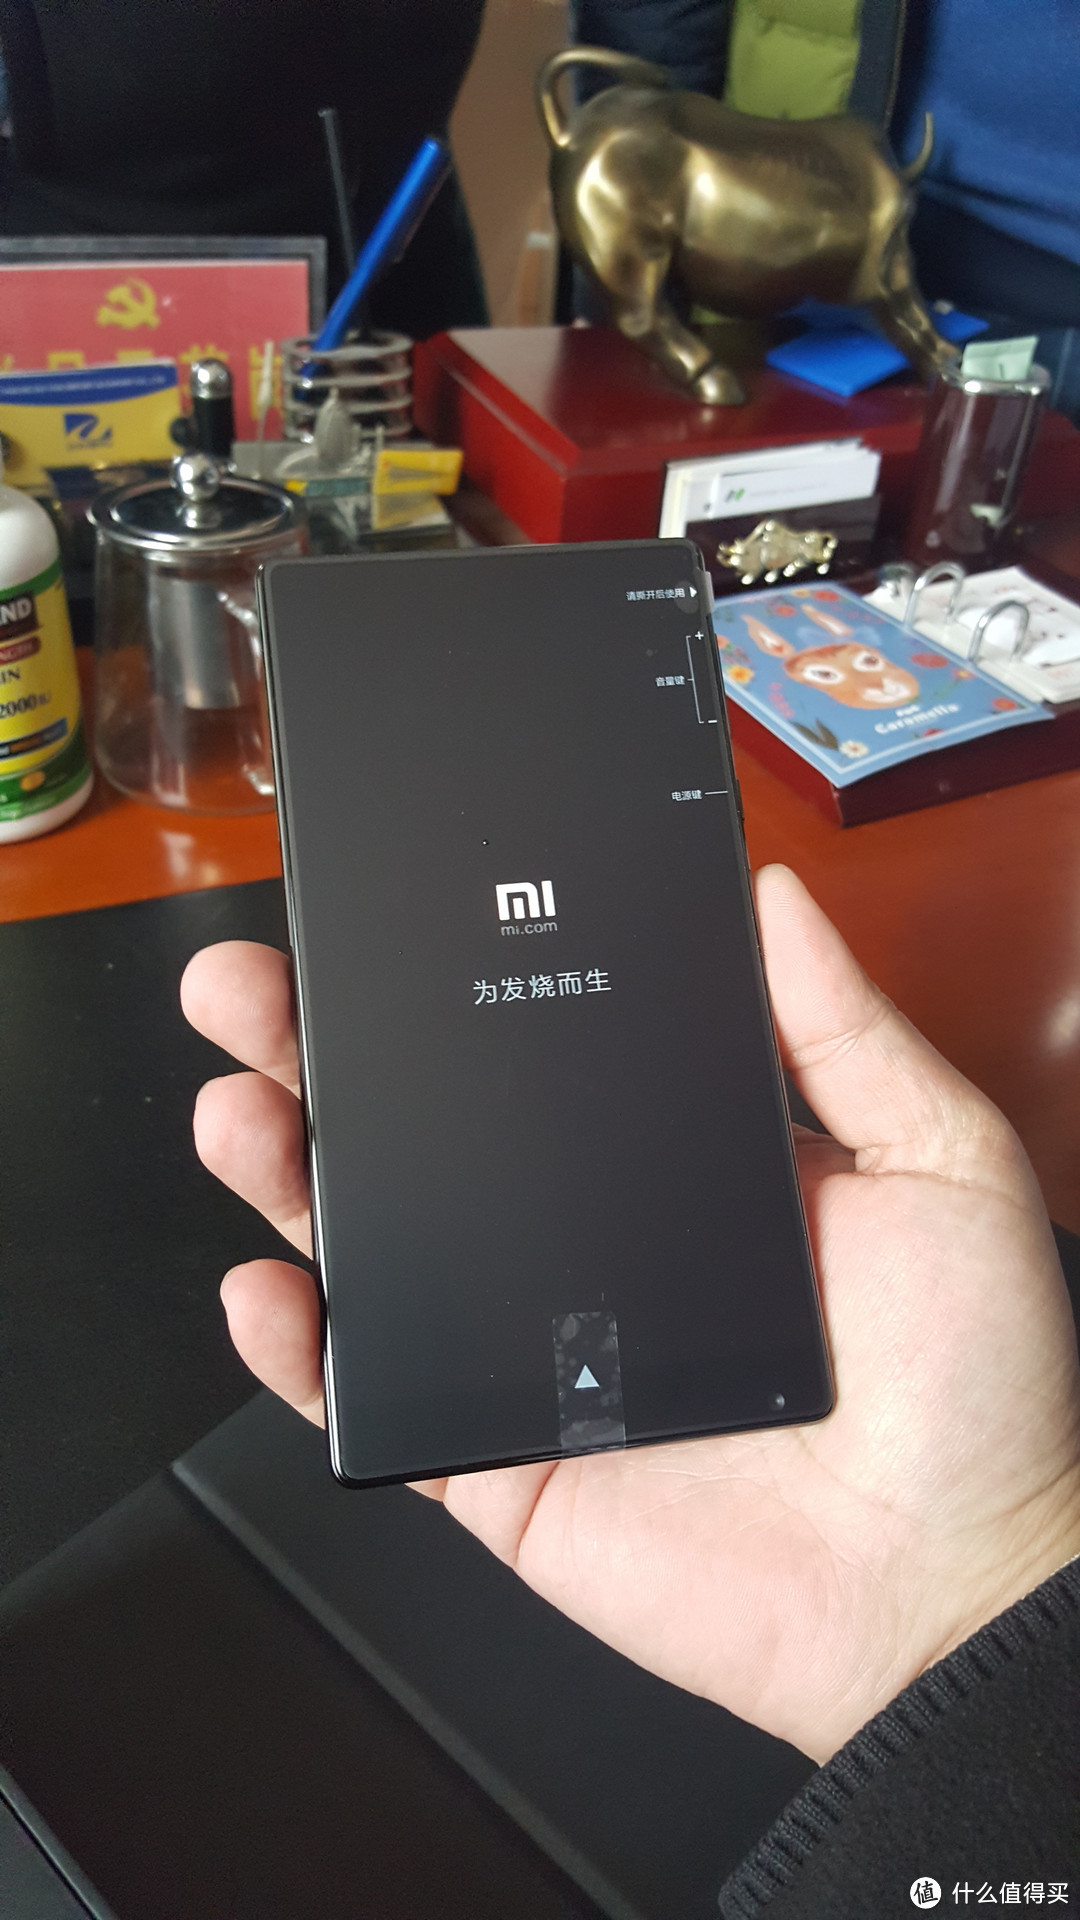 MI 小米 MIX 智能安卓手机 普通版开箱照和使用感受